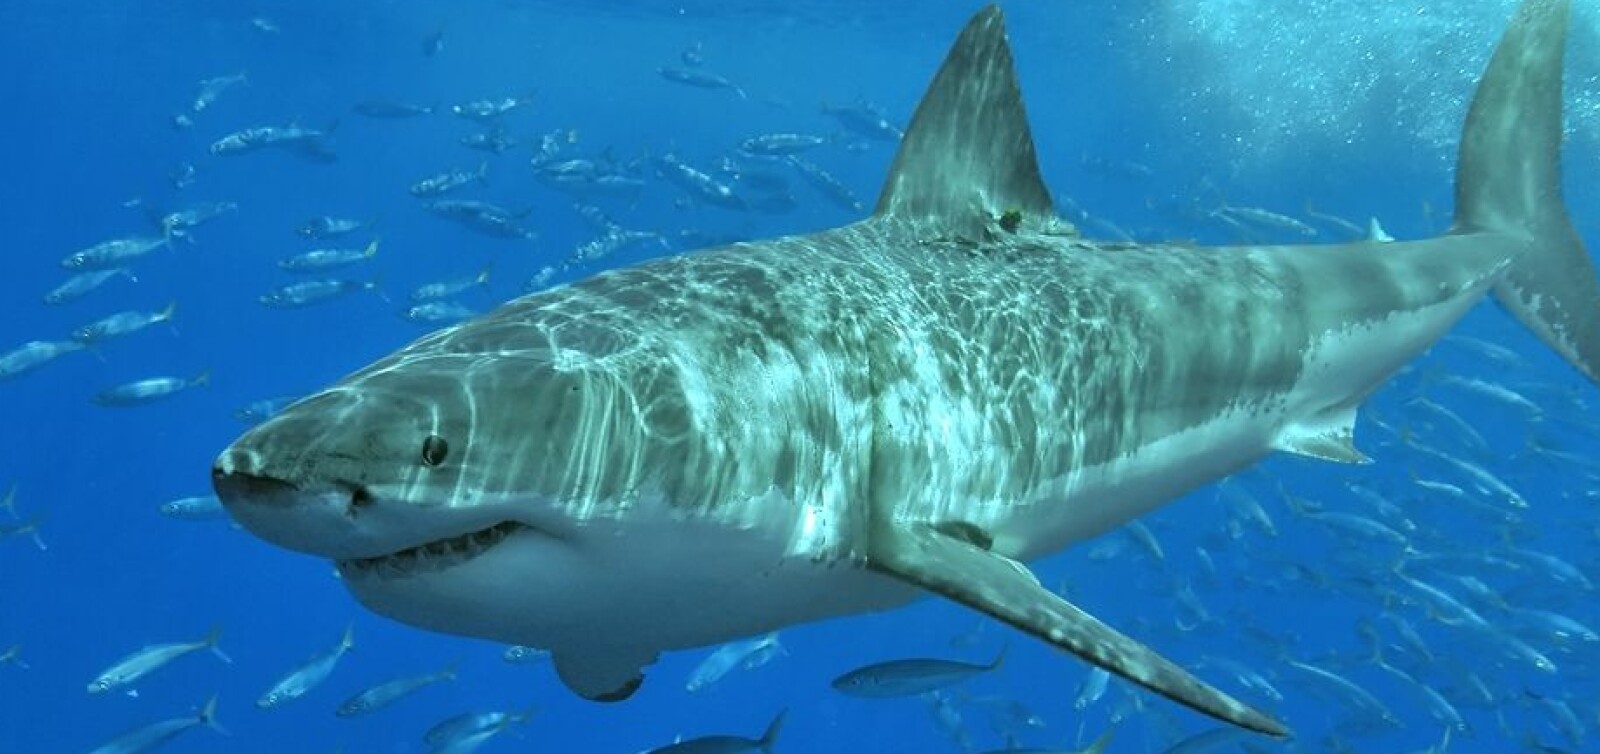 <b>INSPIRASJON:</b> Haien er til inspirasjon for mange, men forskere har brukt haihuden som "mal" for å lage et materiale som hindrer mikroorganismer i å feste seg.